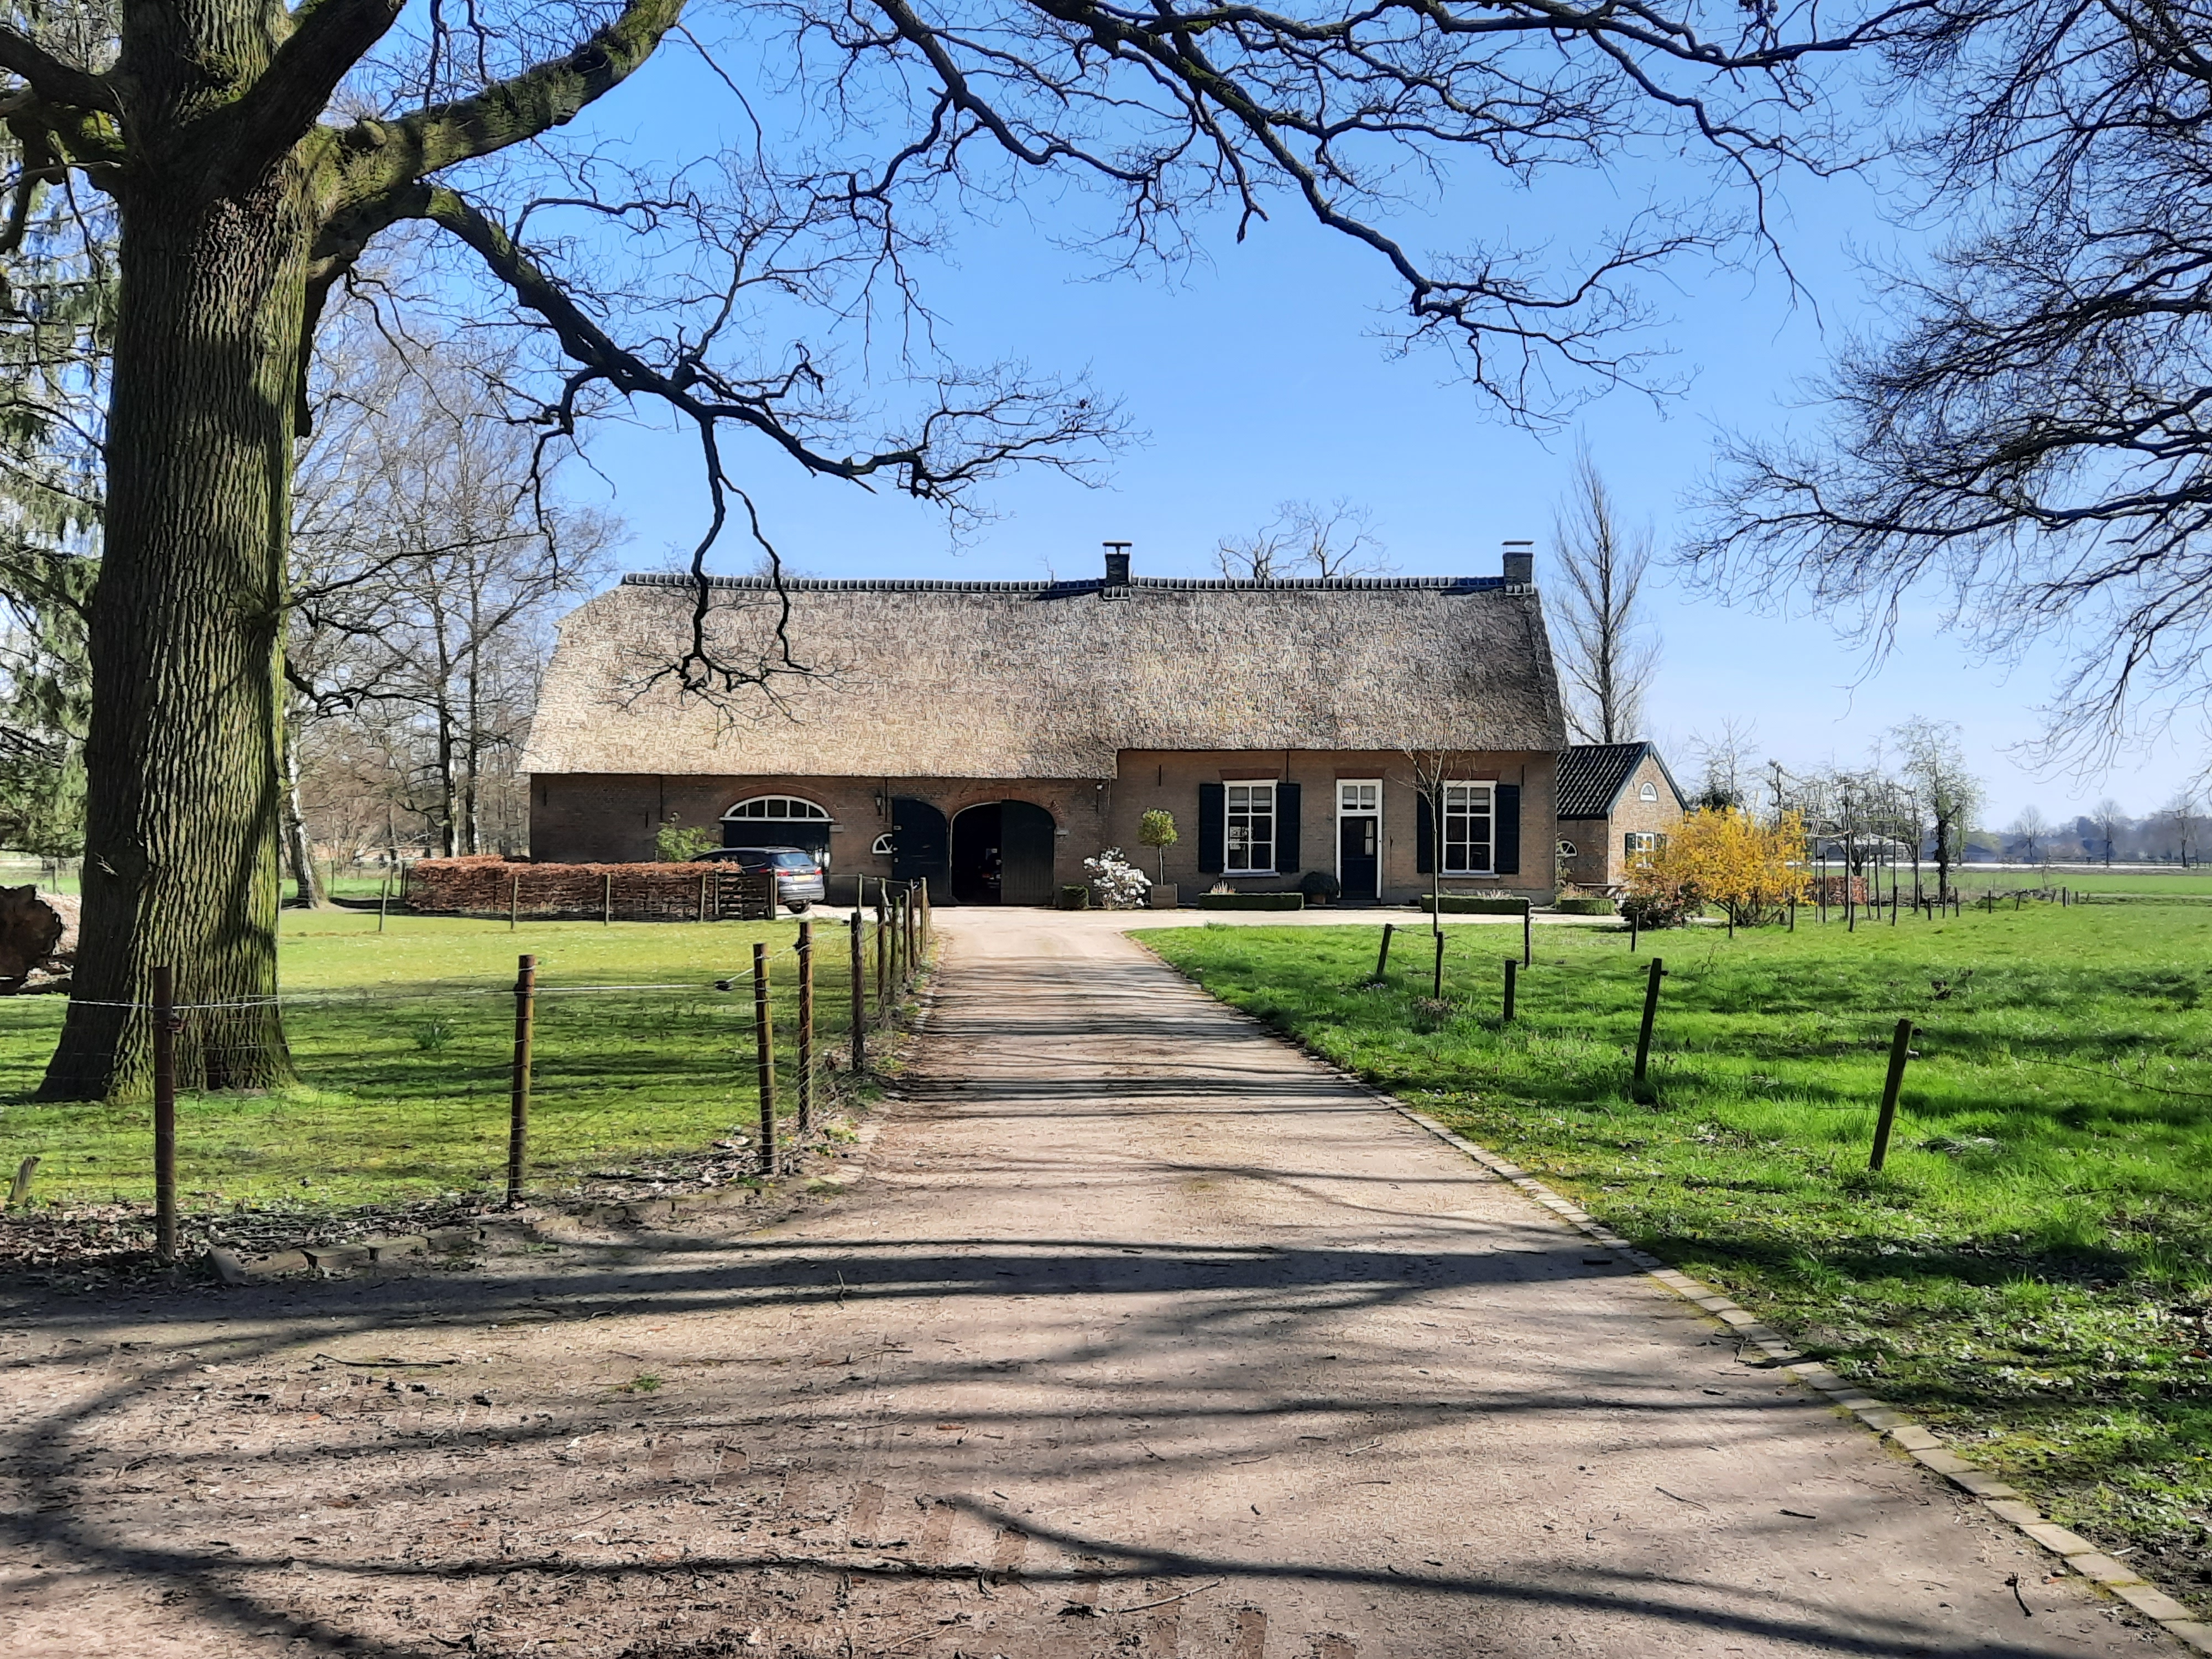 ulvenhout__hoeve_voorbij_huisnr_75__meer_aan_de_waterkant__opname_jac_meeren_30_maart_2021.jpg